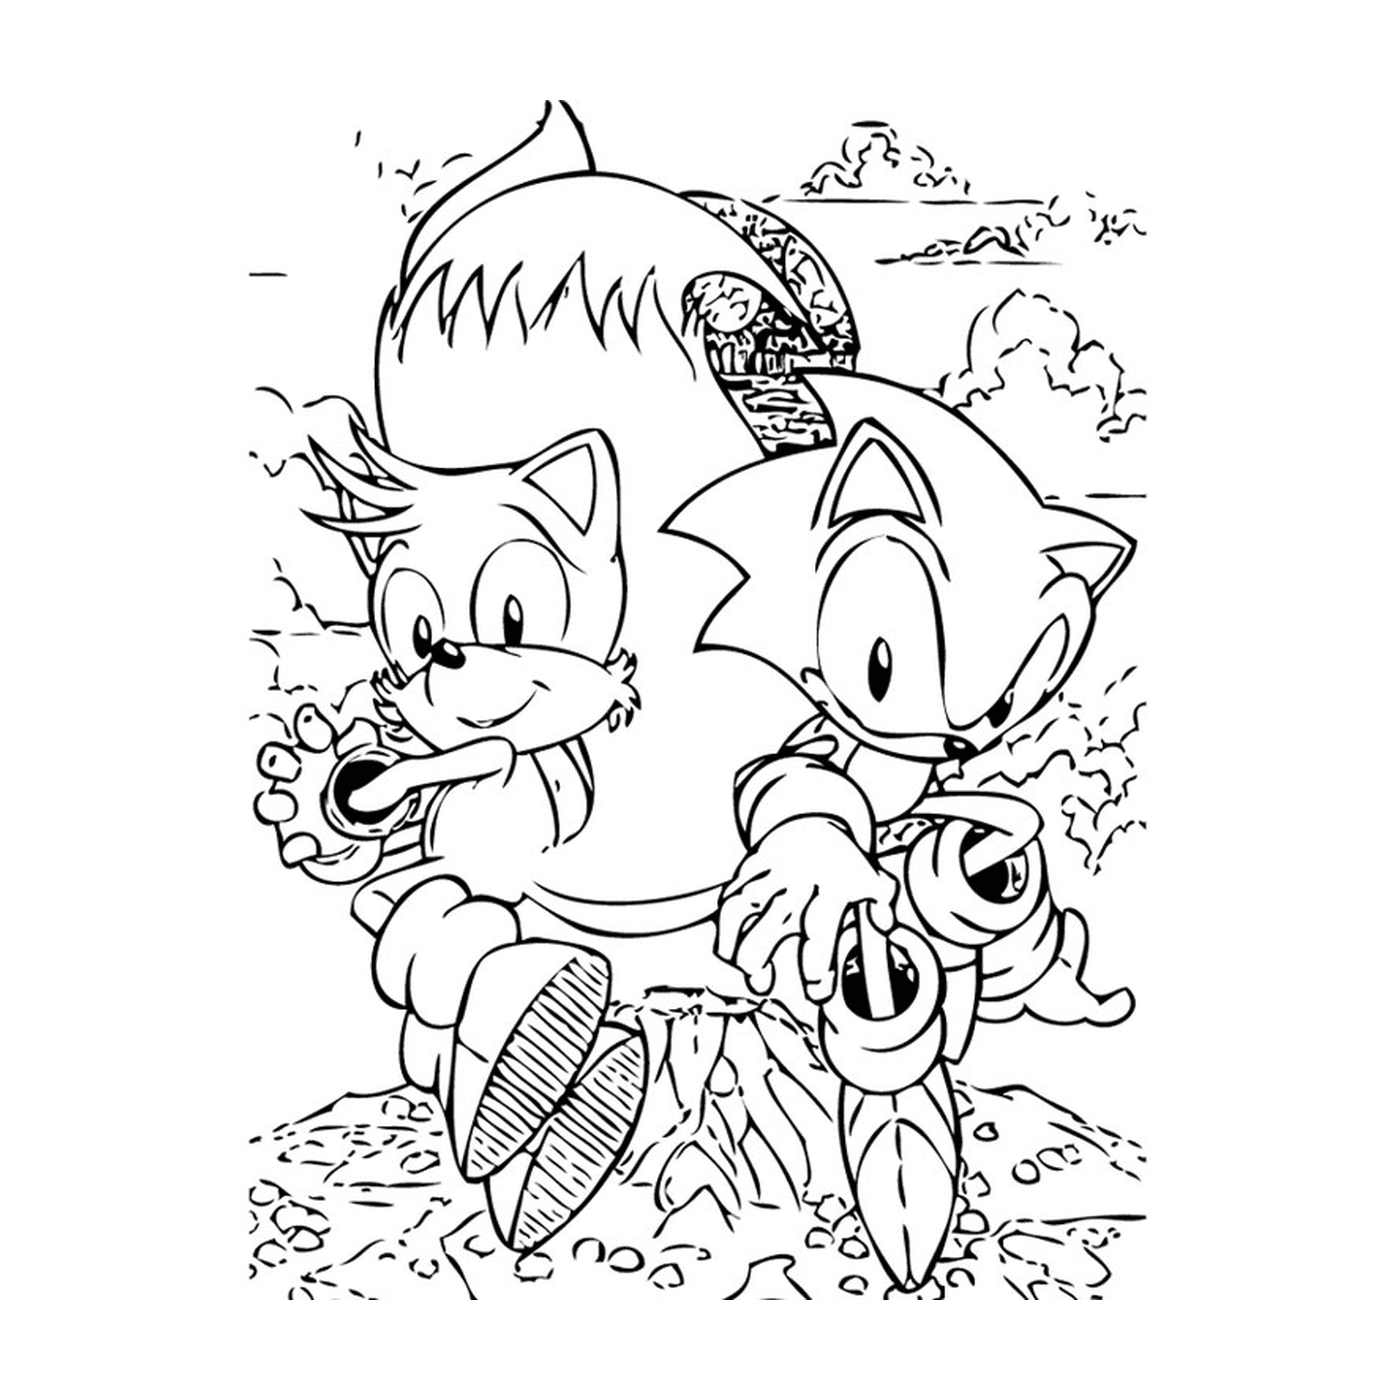  Sonic und Tails im Duett 